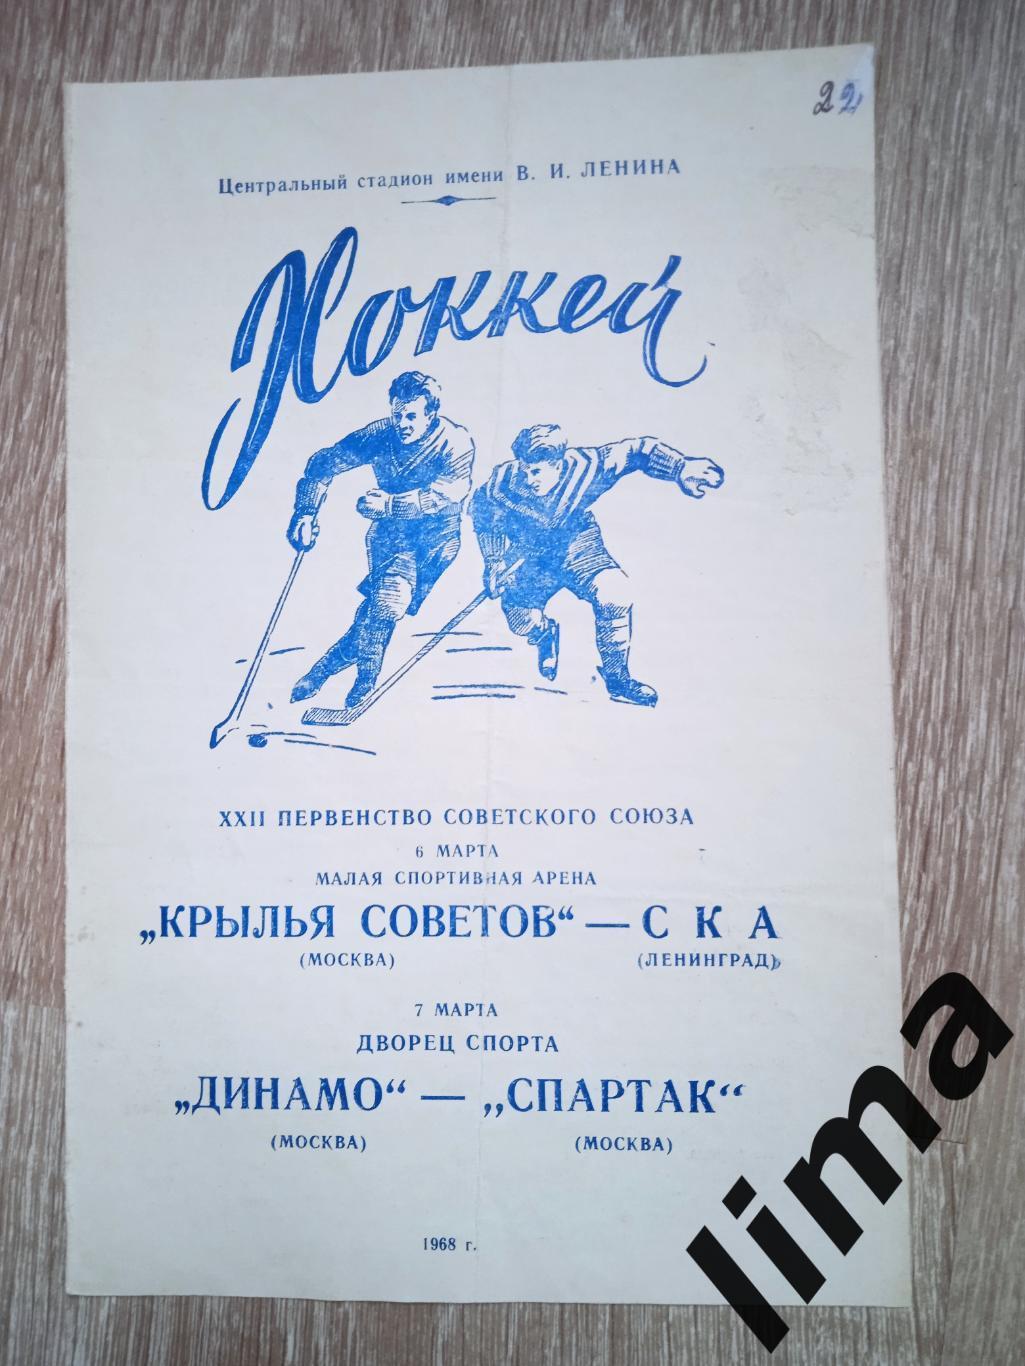 Крылья советов - СКА,Динамо Москва - Спартак Москва 06,07.03.1968